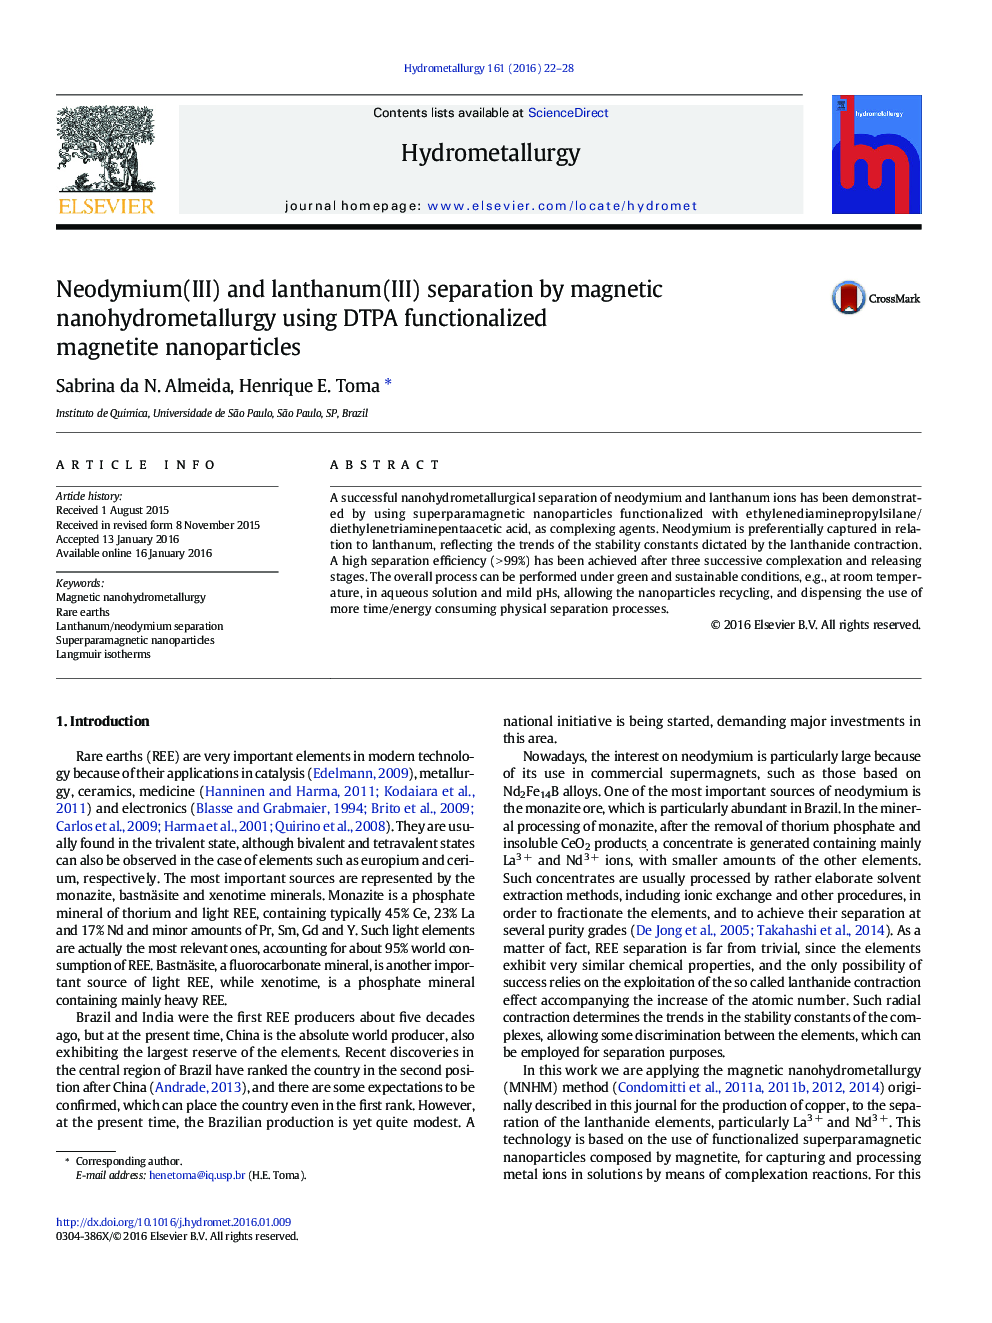 نئودیمیم (III) و لانتانیم (III) جدایی از  نانوهیدرومتالورژی مغناطیسی با استفاده از نانوذرات مگنتیت DTPA عاملدار